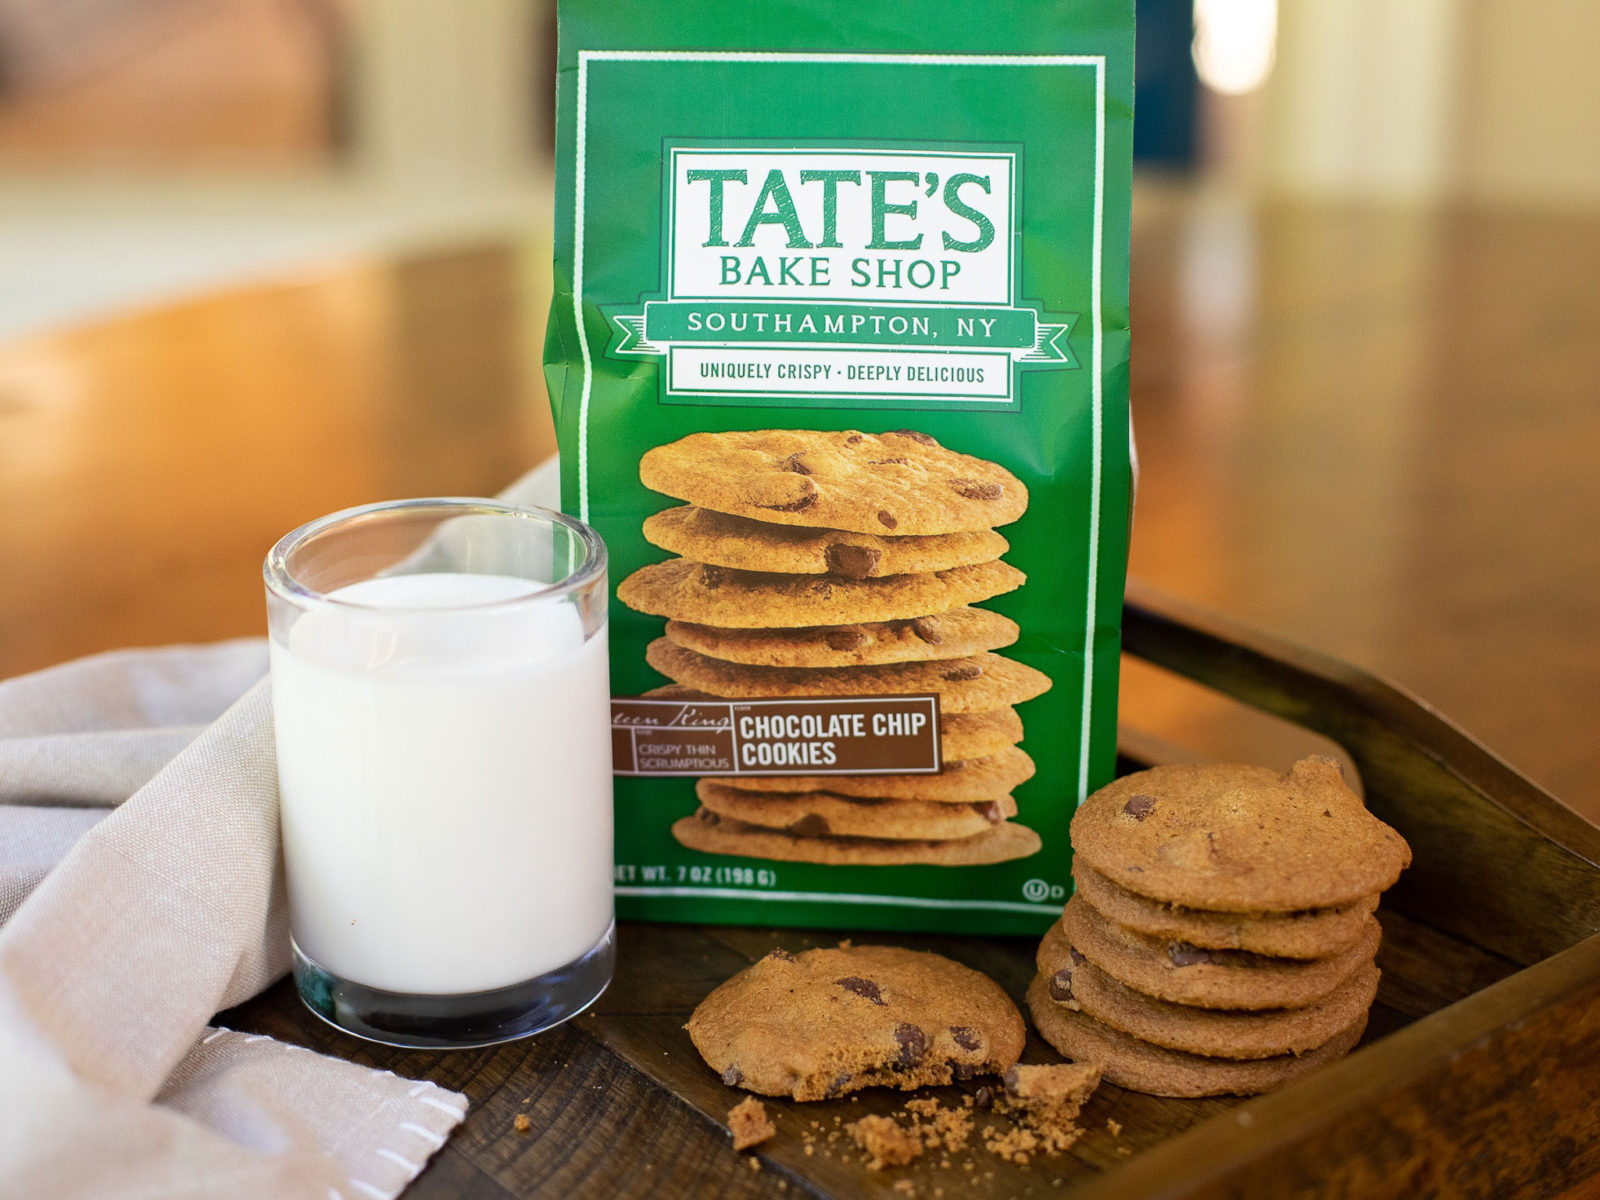 Tate’s Bake Shop Cookies As Low As $4.04 At Publix (Regular Price $6.29)